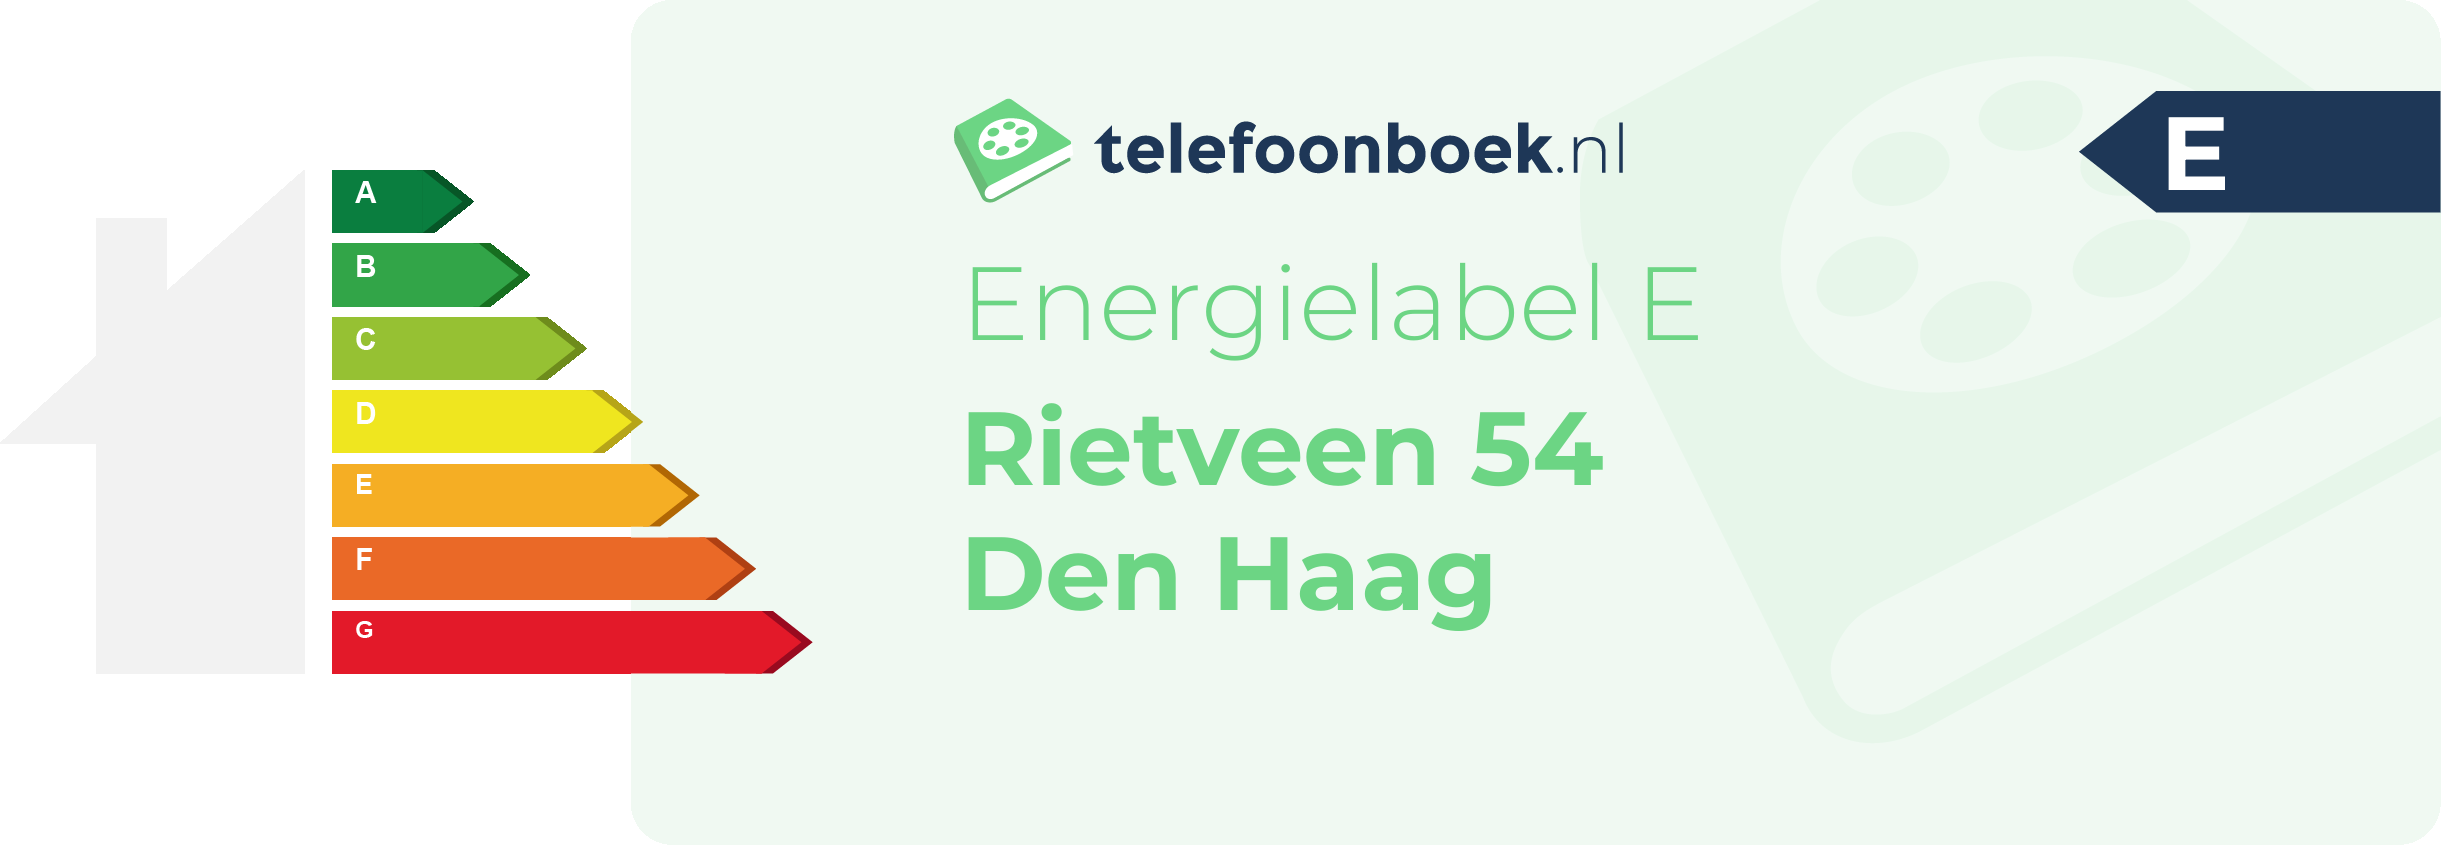 Energielabel Rietveen 54 Den Haag